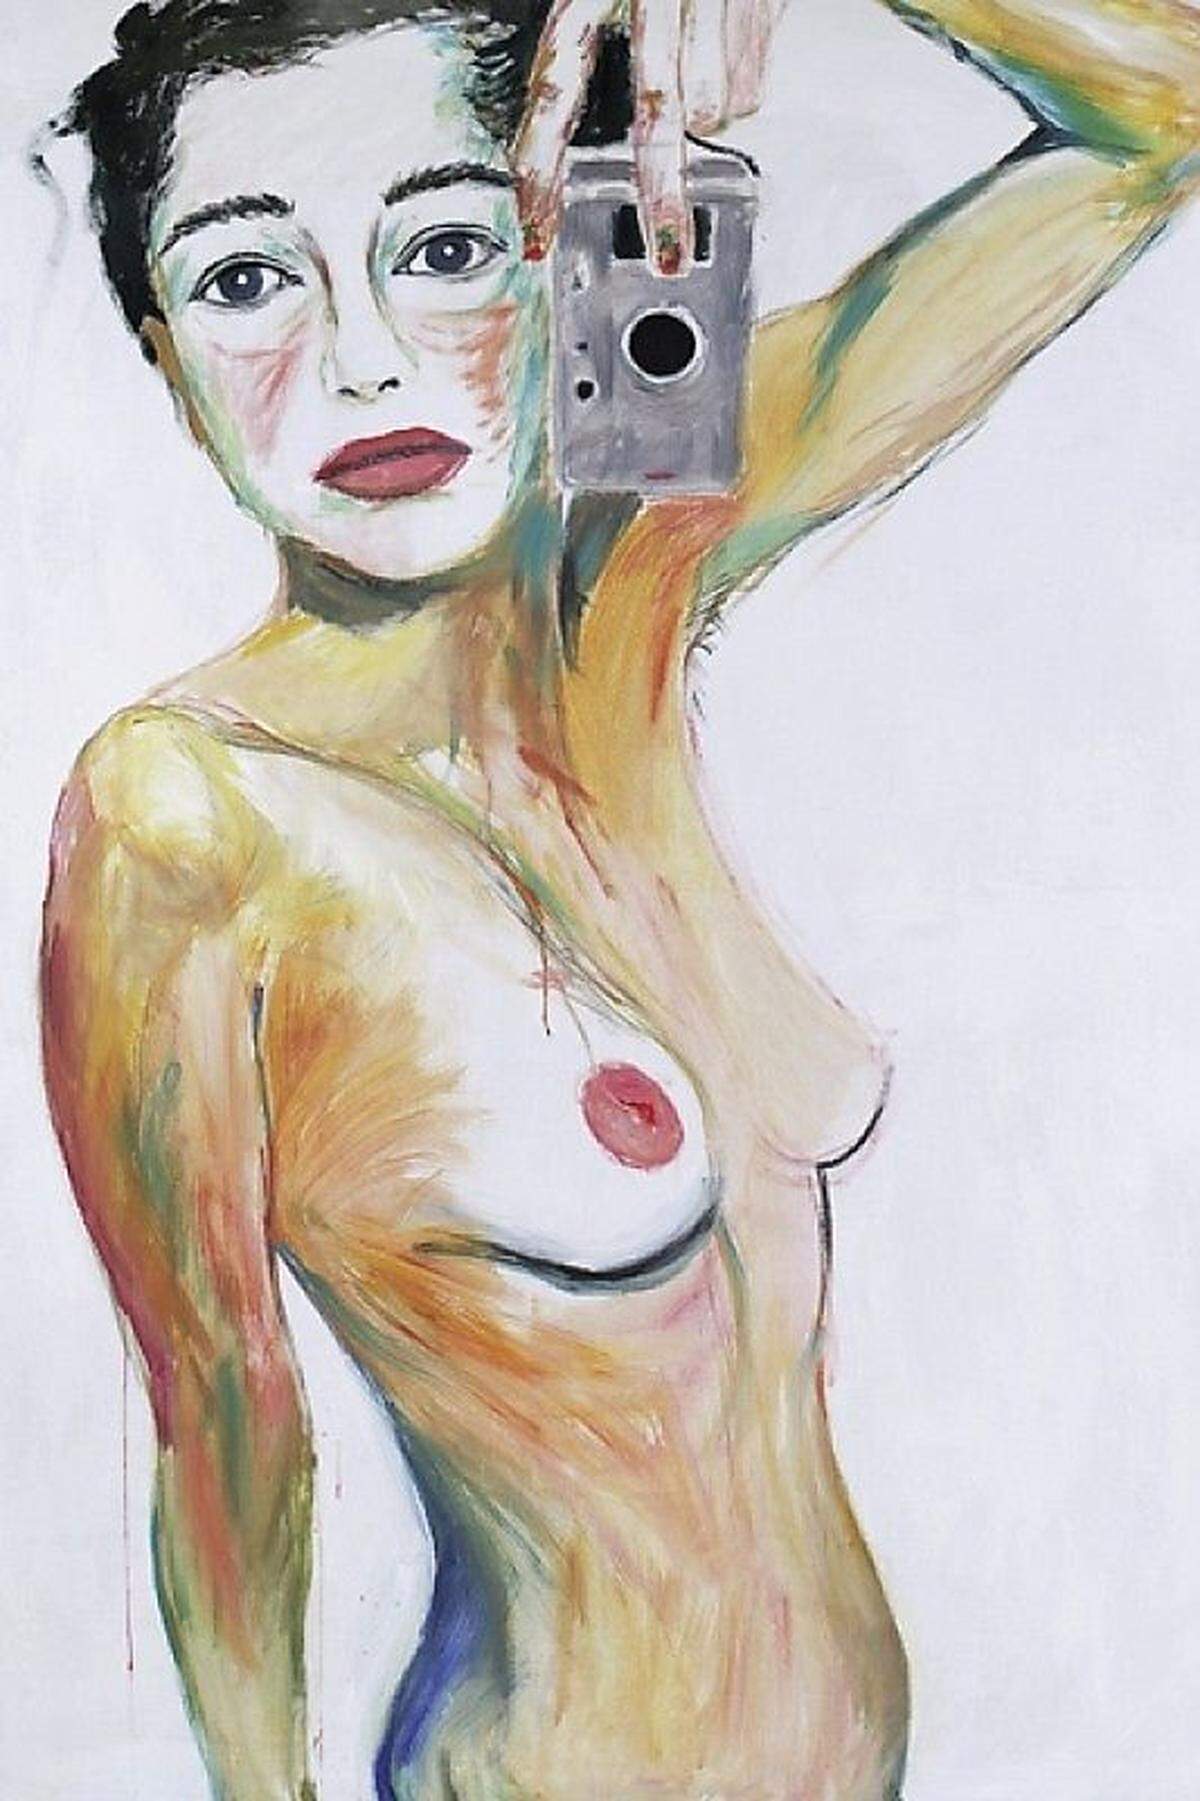 Auch die Wiener Künstlerin Elke Krystufek bildet sich gerne selbst ab. Die 44-Jährige gilt als "Selfie"-Vertreterin der zeitgenössischen Kunst. In ihren Selbstakten macht sie sich selbst zur Kunstfigur und hebt damit die klassischen Gegensätze von Privatsphäre und Öffentlichkeit aus den Angeln.  Elke Krystufek: „Imperial Palace – Las Vegas“, 1999, Acryl auf Leinwand. 